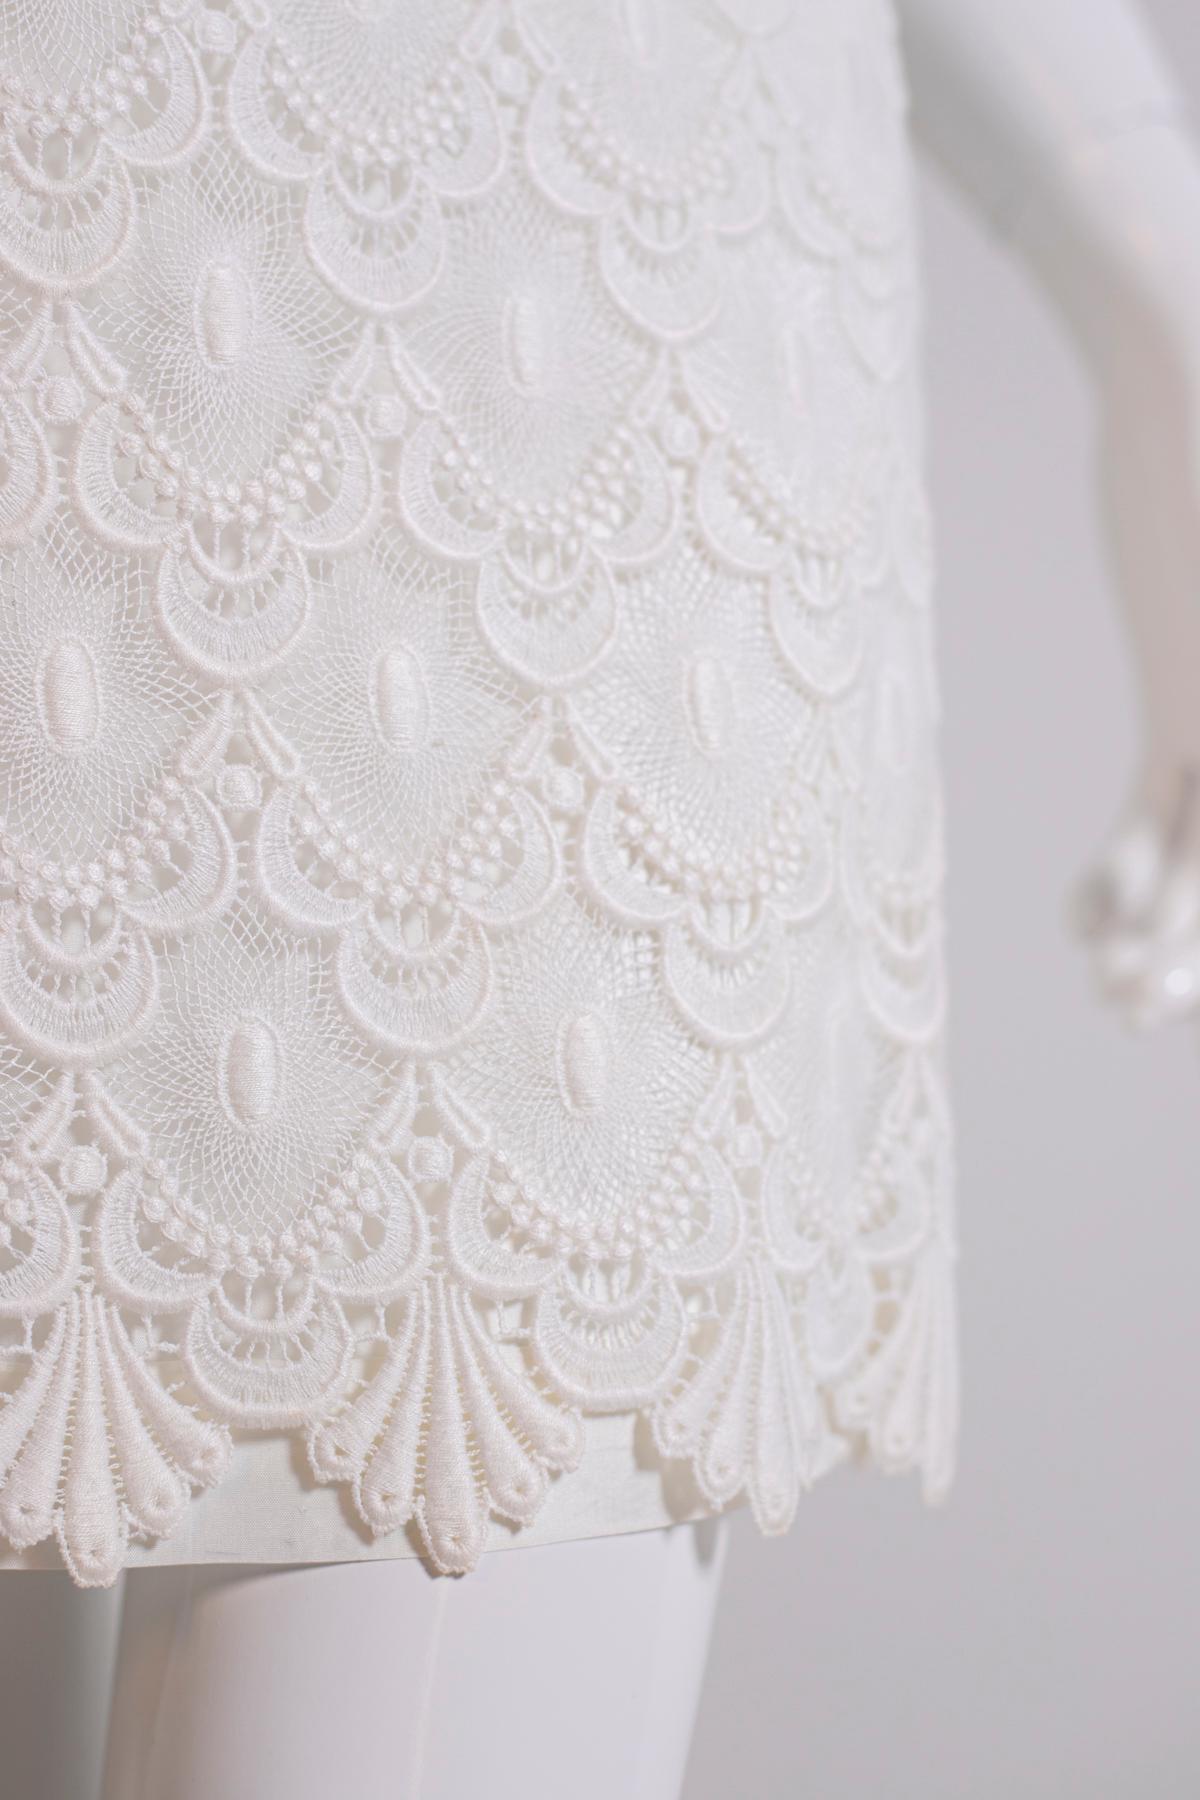 Robe en dentelle blanche des années 2000 d'Annabelle, fabriquée en Italie.
La robe est très jolie : courte jusqu'au-dessus des genoux, elle a un col haut et composé, pas de manches, mais de larges bretelles.
La robe descend très doucement, sans être